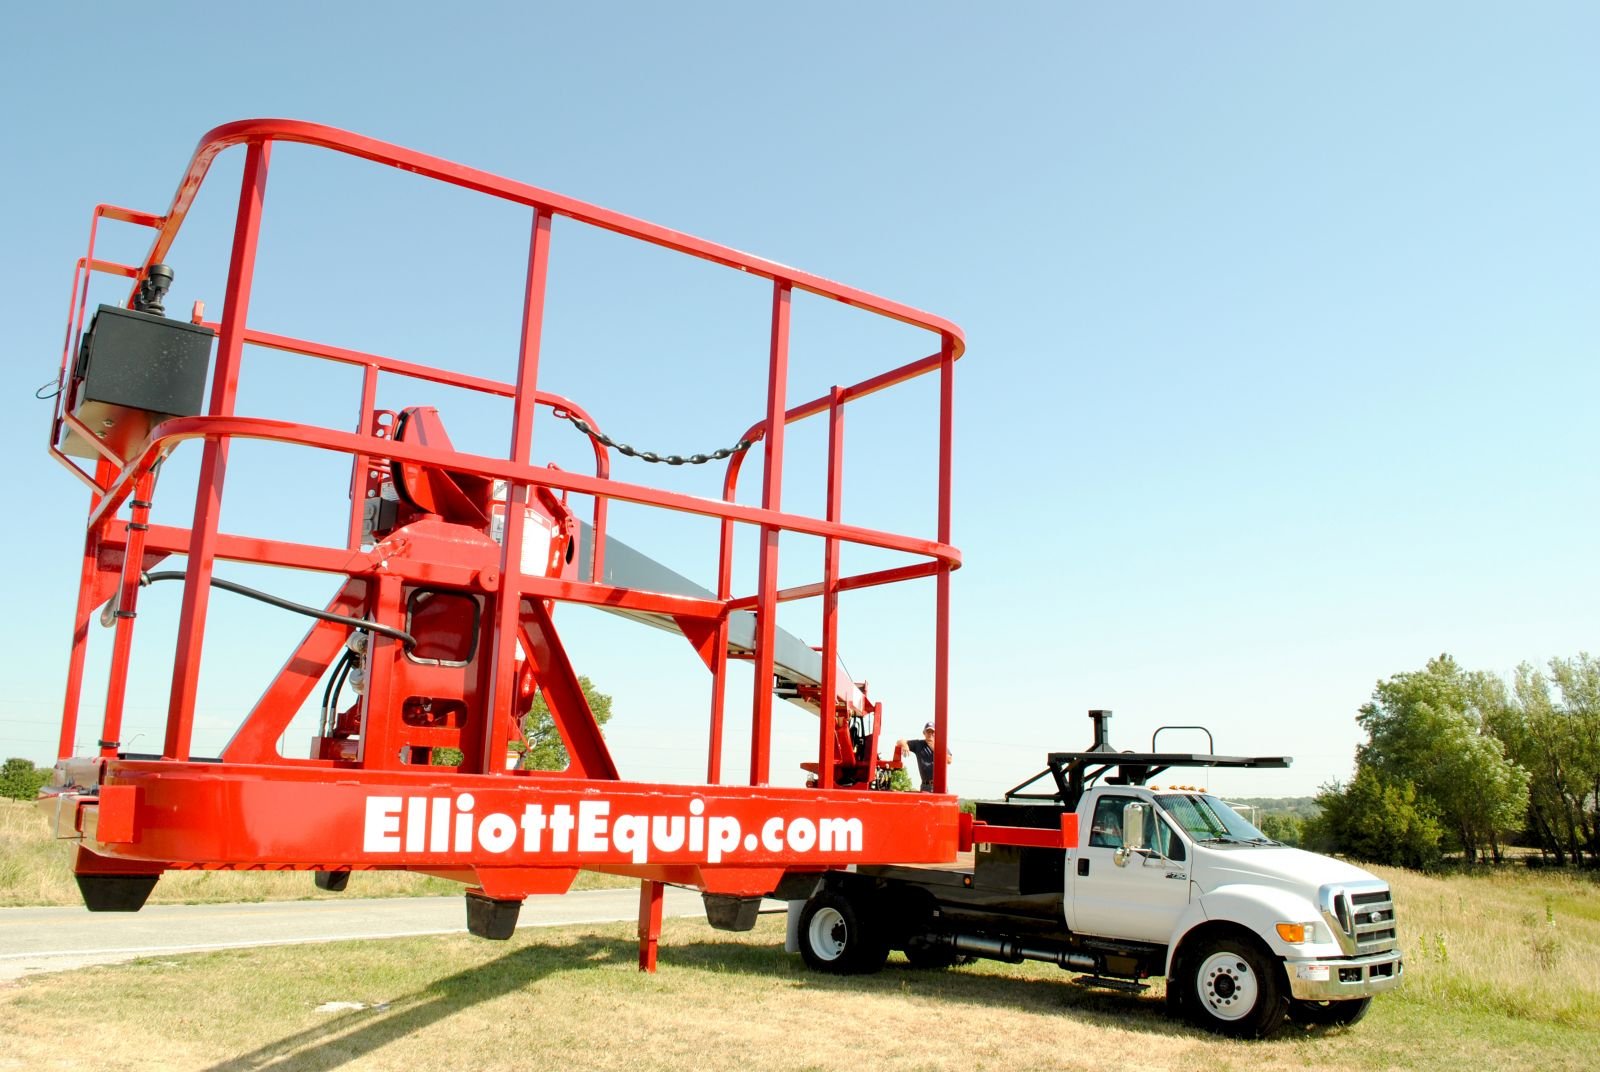 Elliott Equipment HiReach Aerial Work Platforms